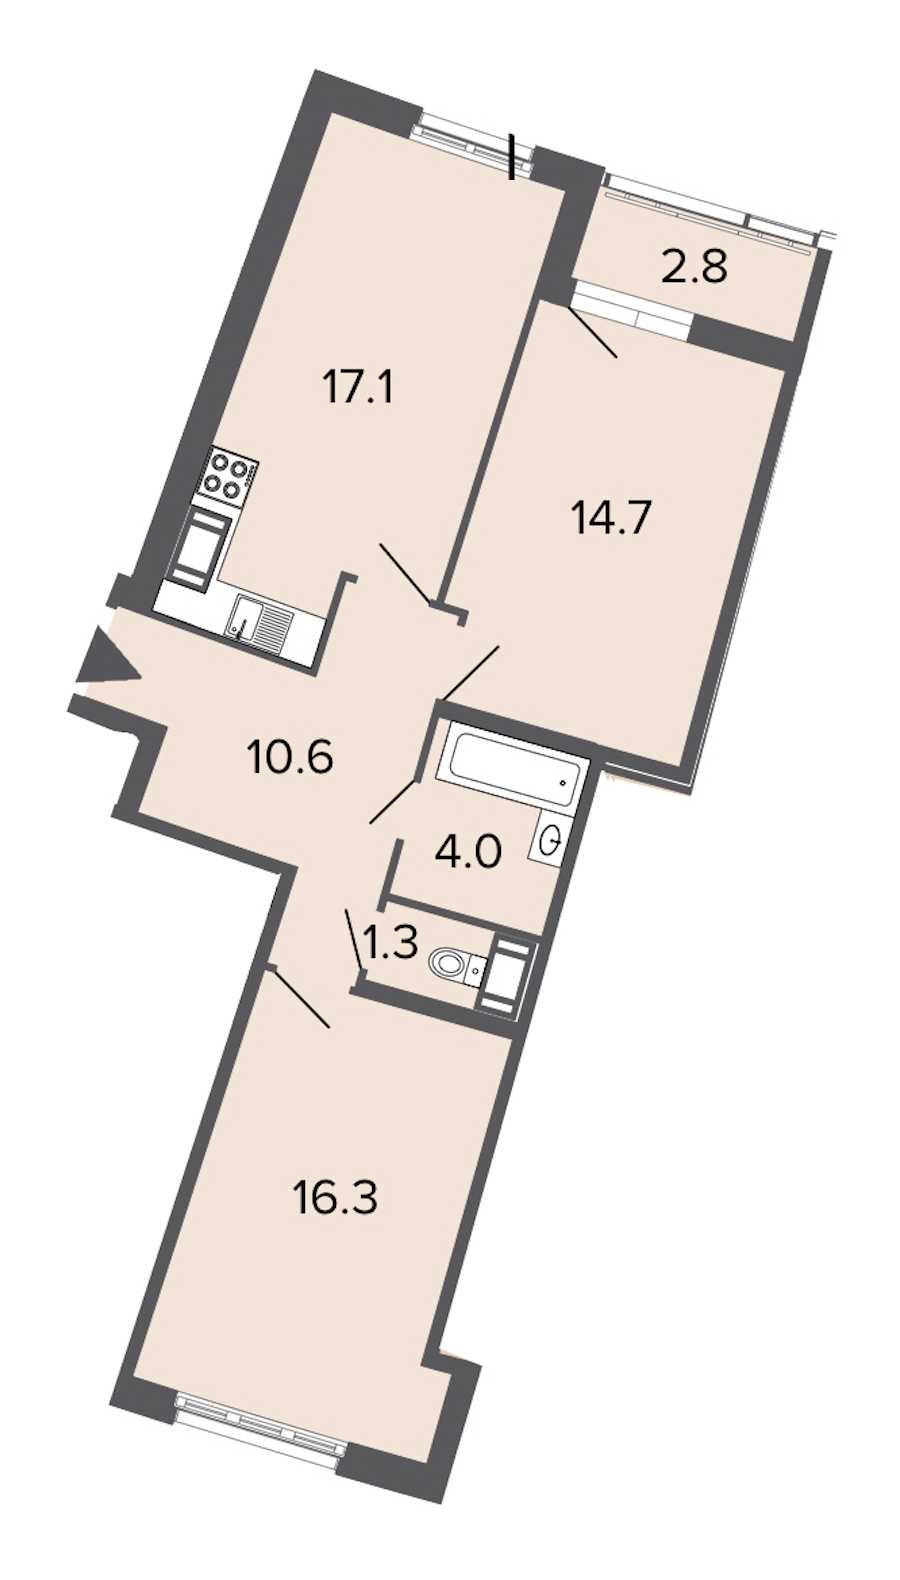 Двухкомнатная квартира в : площадь 64 м2 , этаж: 10 – купить в Санкт-Петербурге